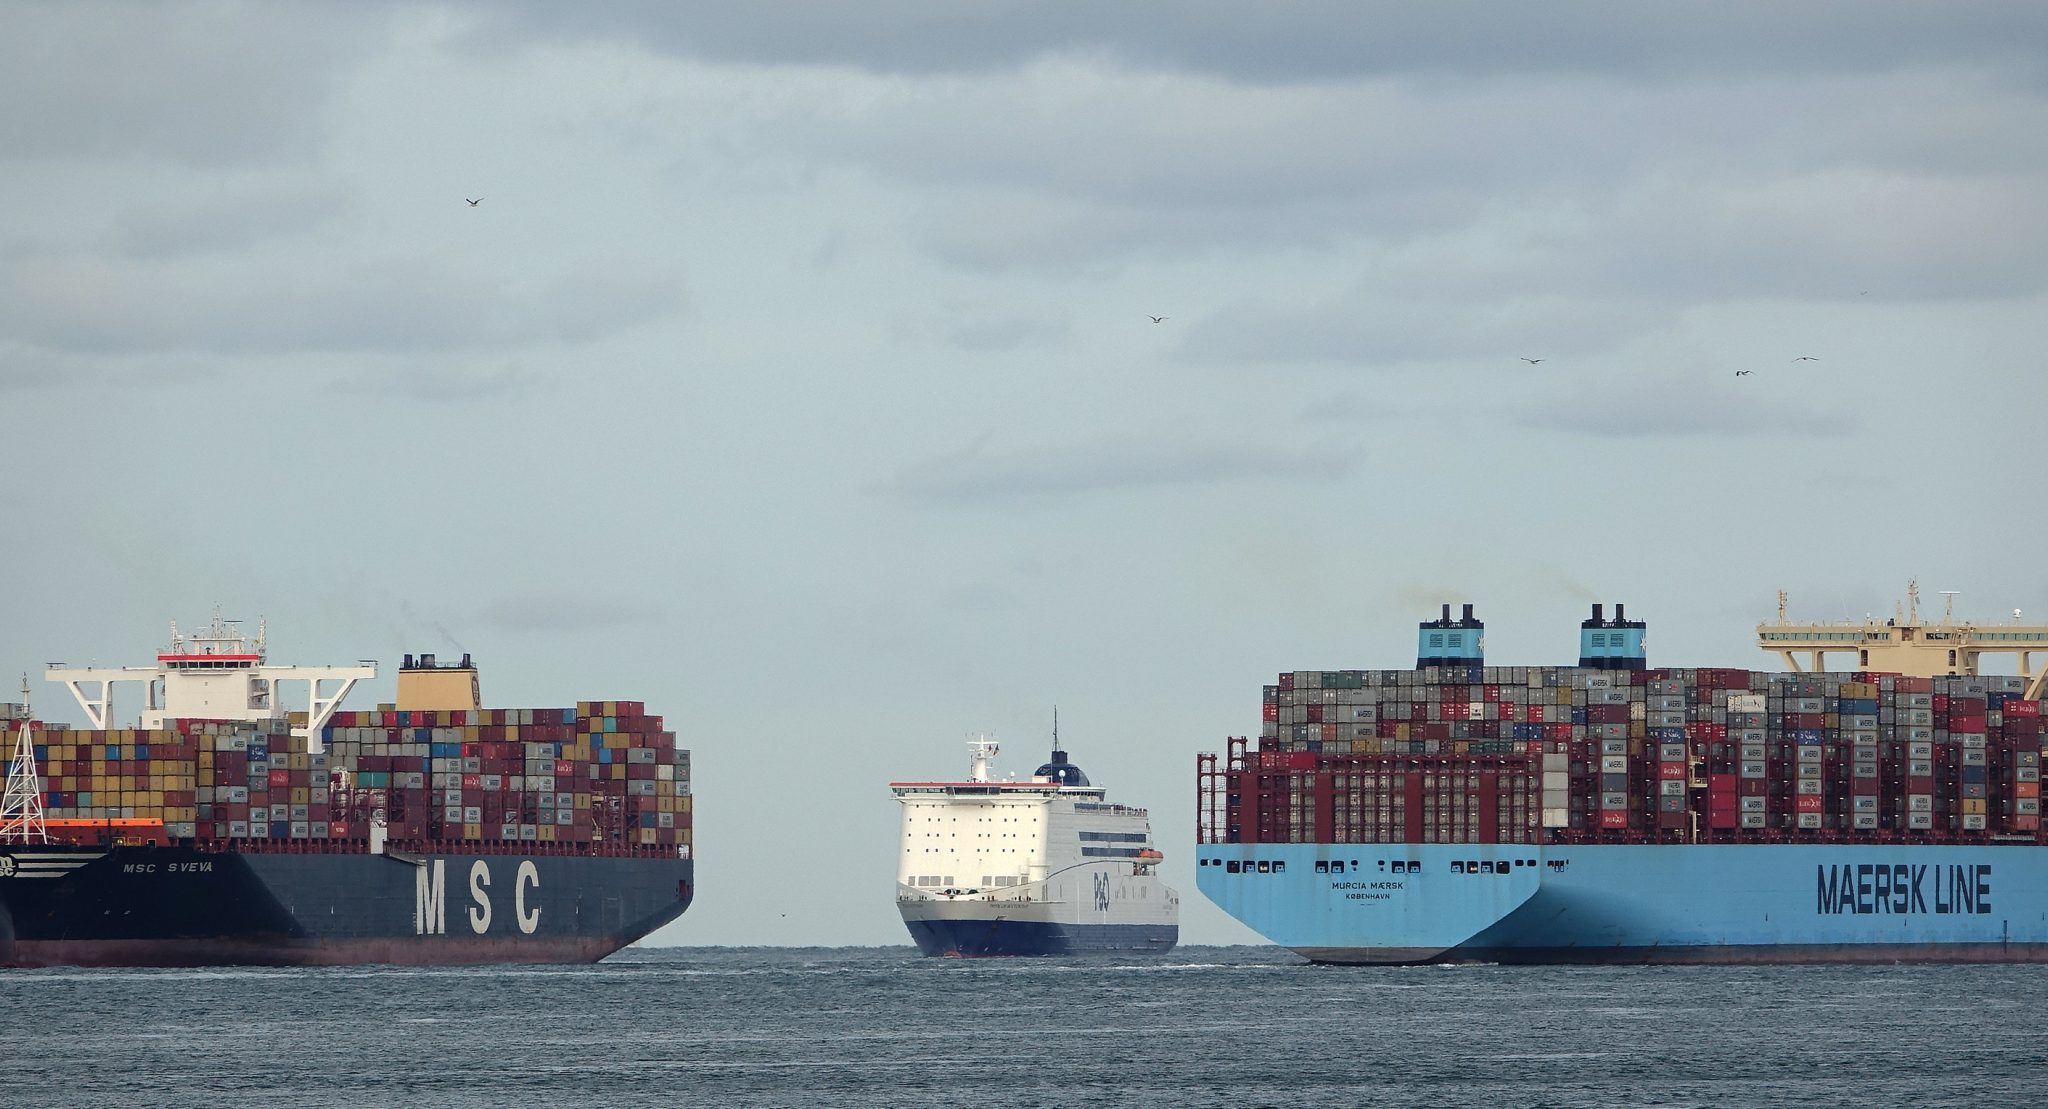 Vorig jaar heeft MSC de titel van grootste rederij ter wereld overgenomen van Maersk.